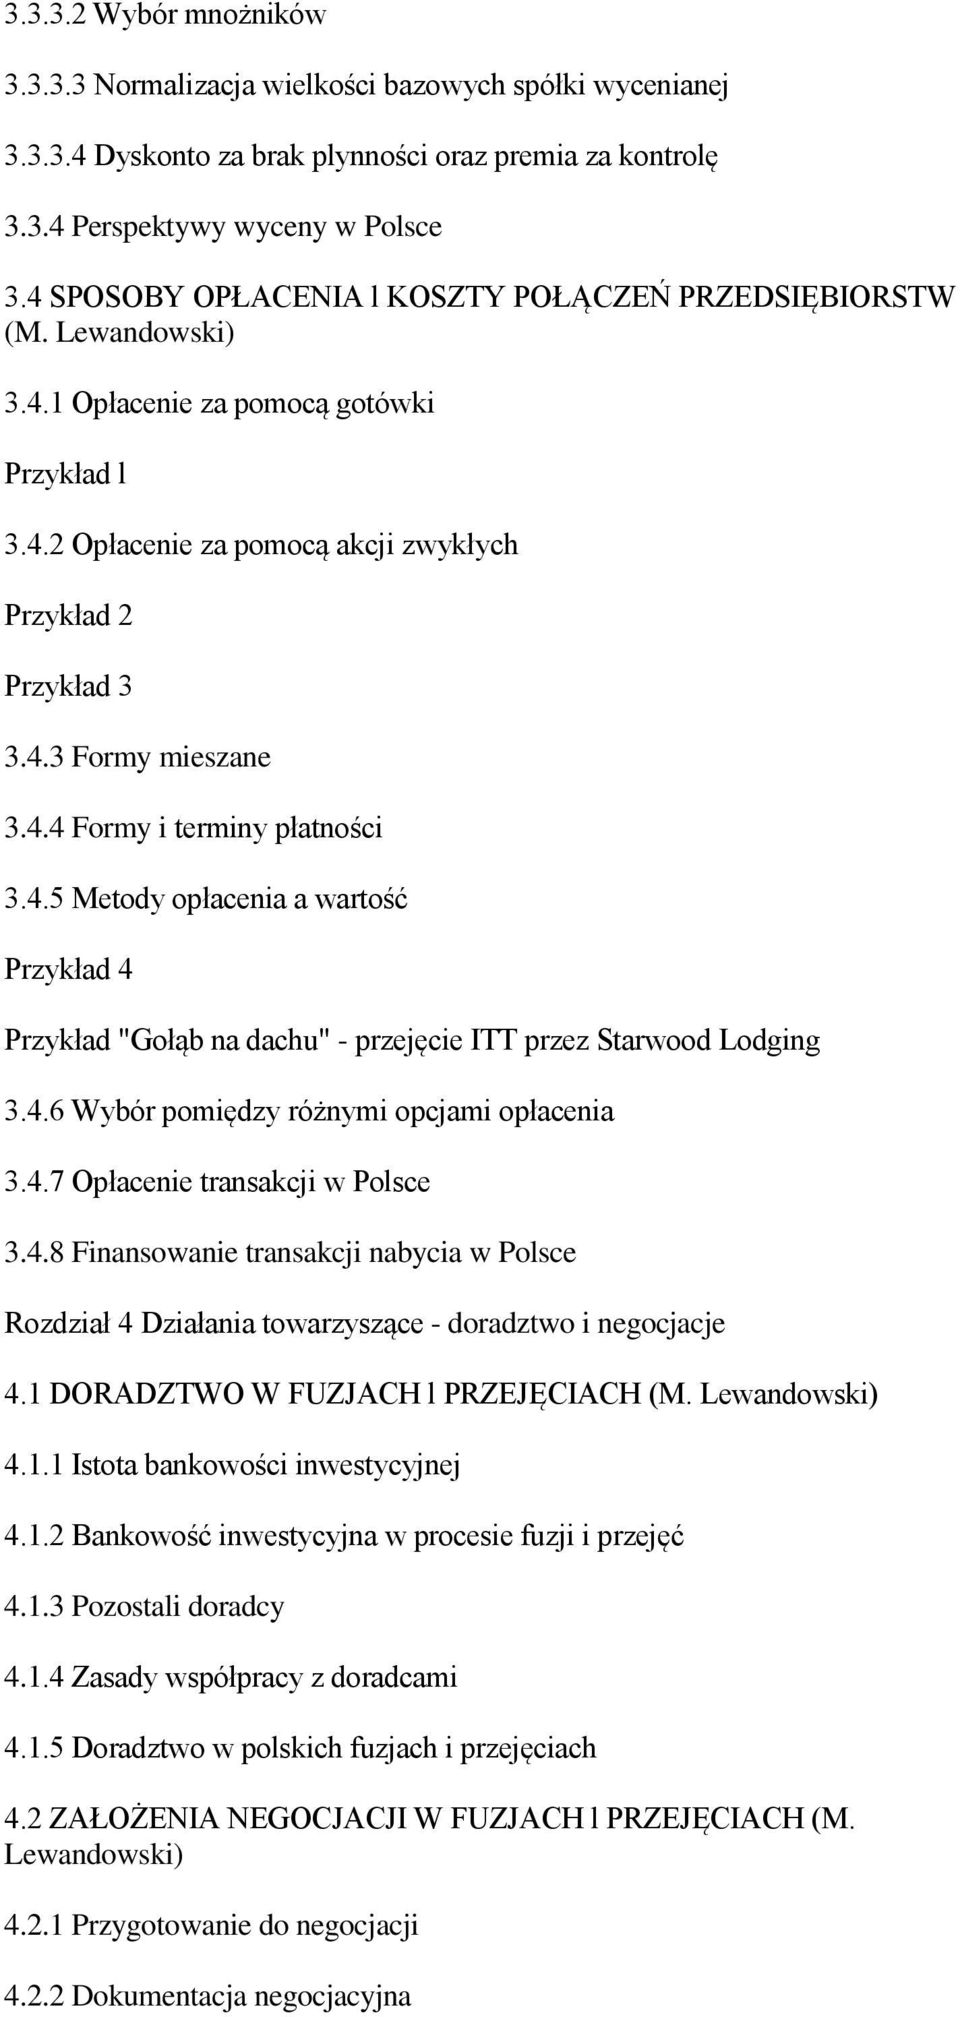 4.5 Metody opłacenia a wartość Przykład 4 Przykład "Gołąb na dachu" - przejęcie ITT przez Starwood Lodging 3.4.6 Wybór pomiędzy różnymi opcjami opłacenia 3.4.7 Opłacenie transakcji w Polsce 3.4.8 Finansowanie transakcji nabycia w Polsce Rozdział 4 Działania towarzyszące - doradztwo i negocjacje 4.